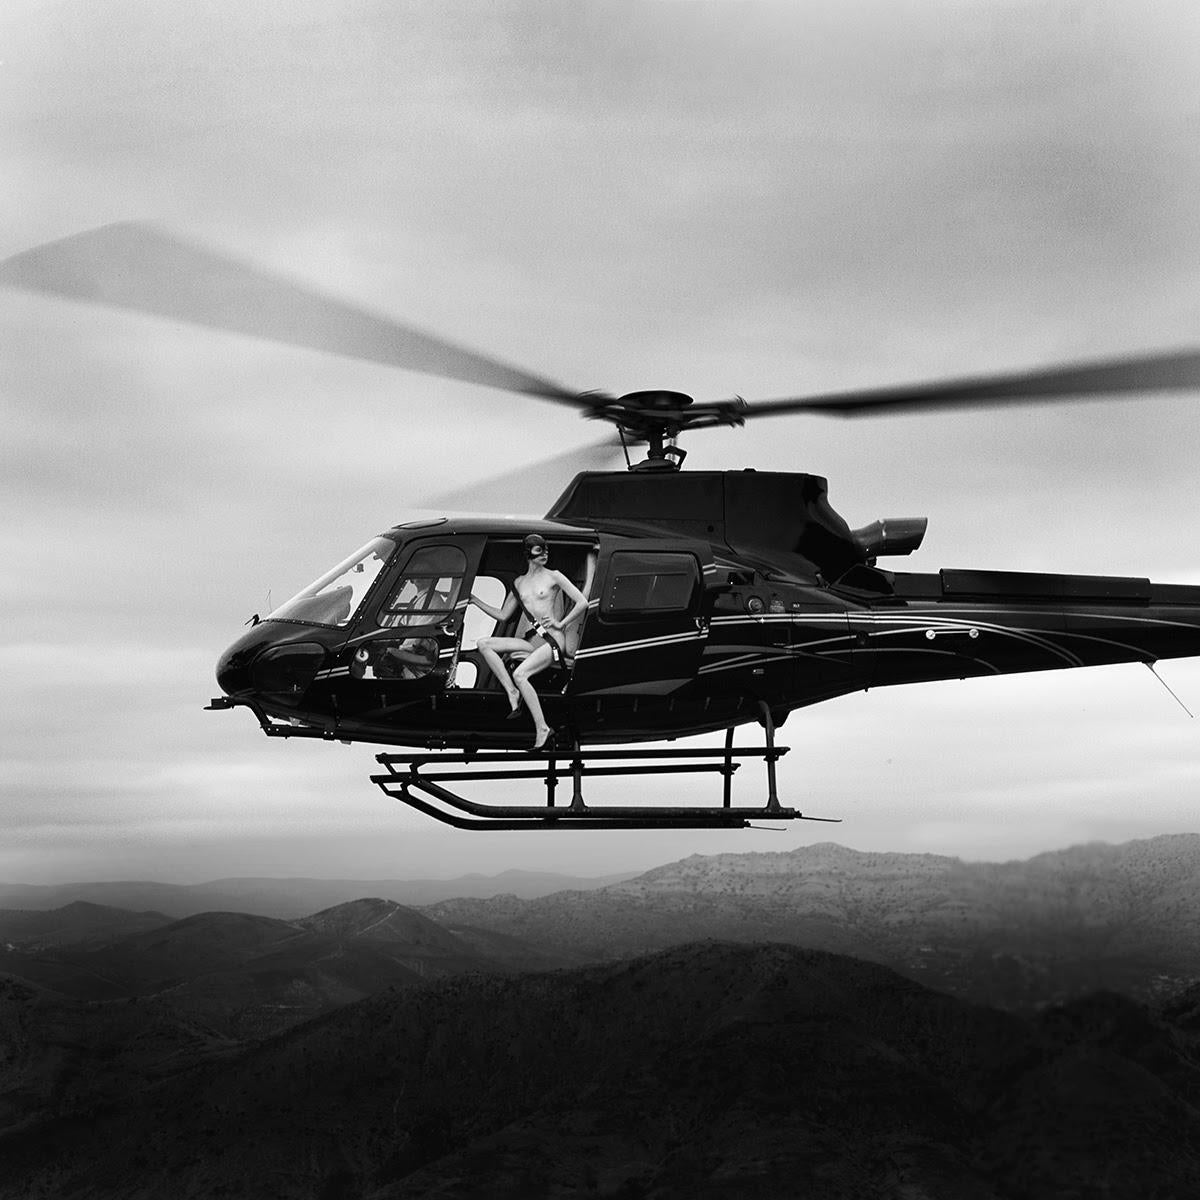 Tyler Shields - Hubschrauber III, Fotografie 2021, gedruckt nach